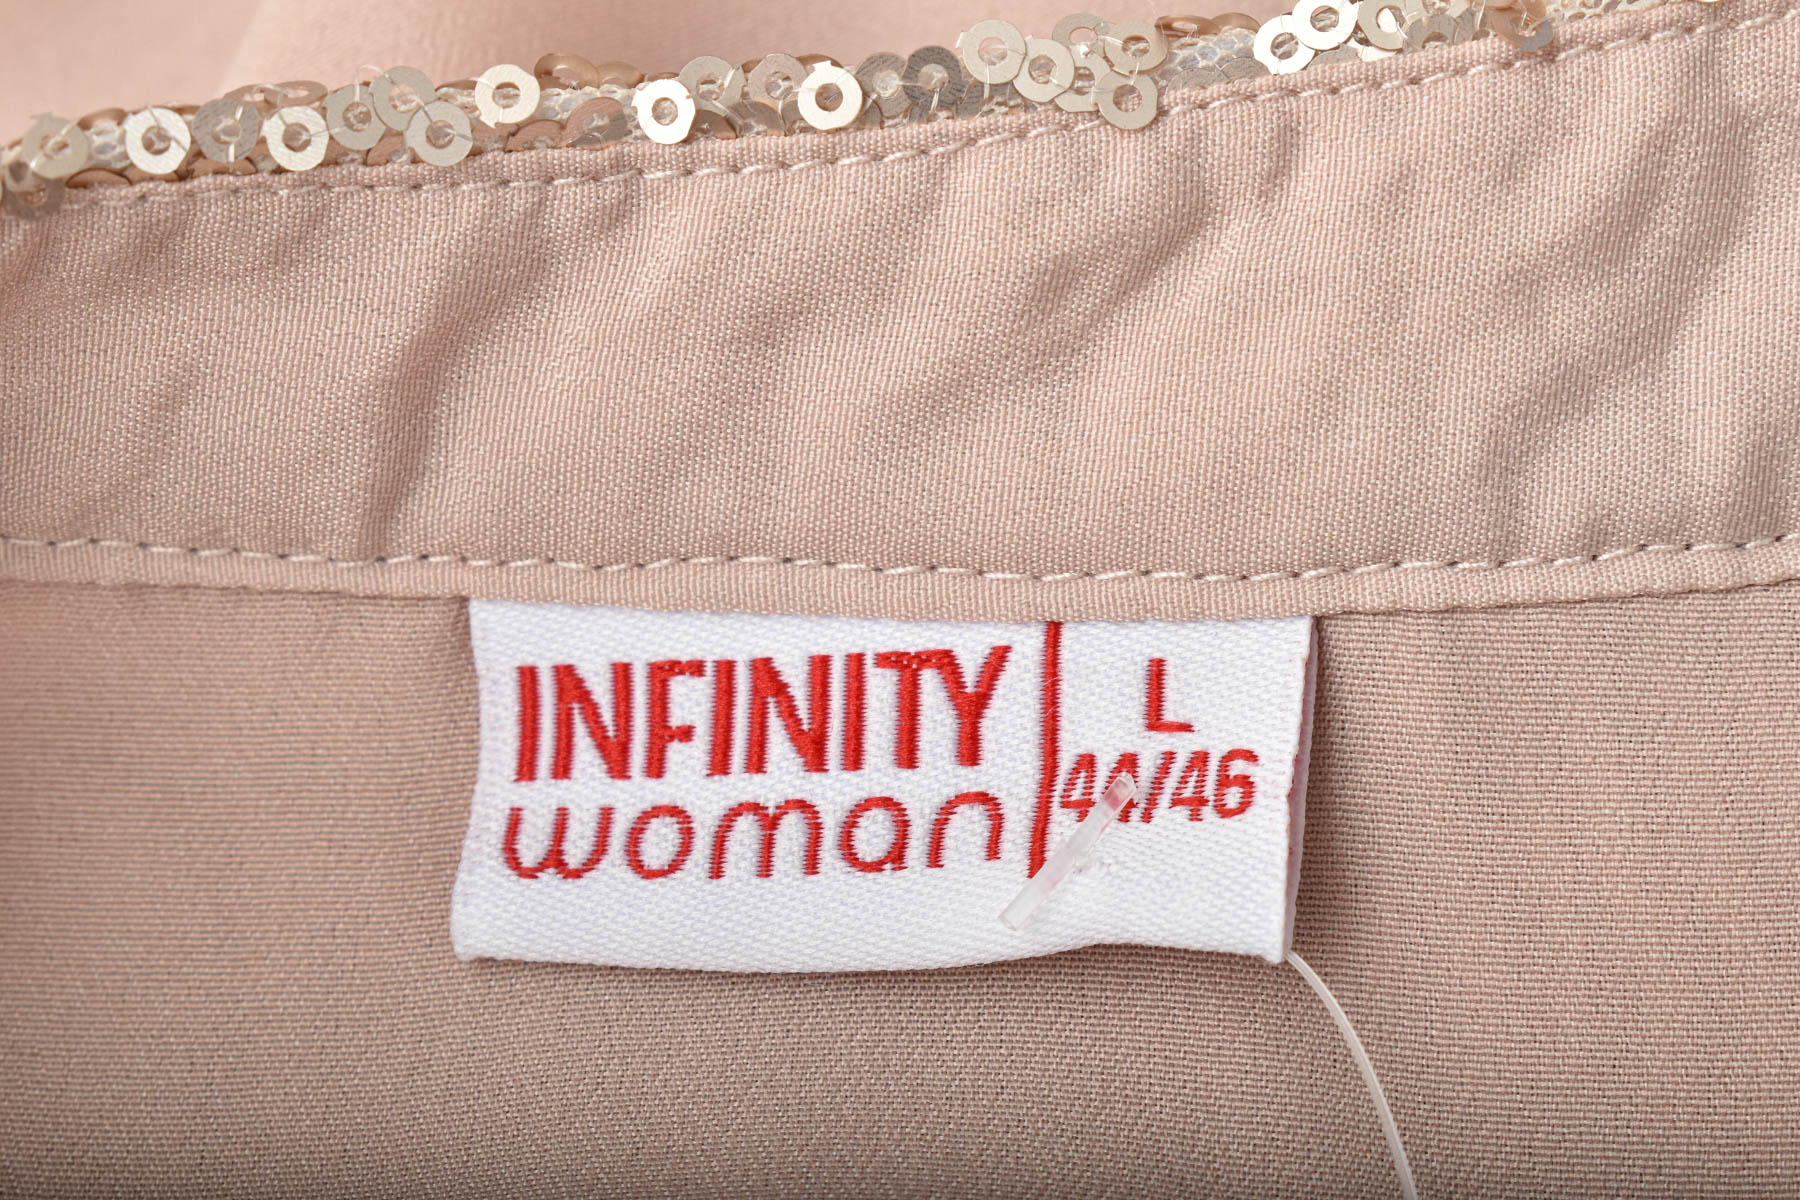 Γυναικείо πουκάμισο - Infinity Woman - 2